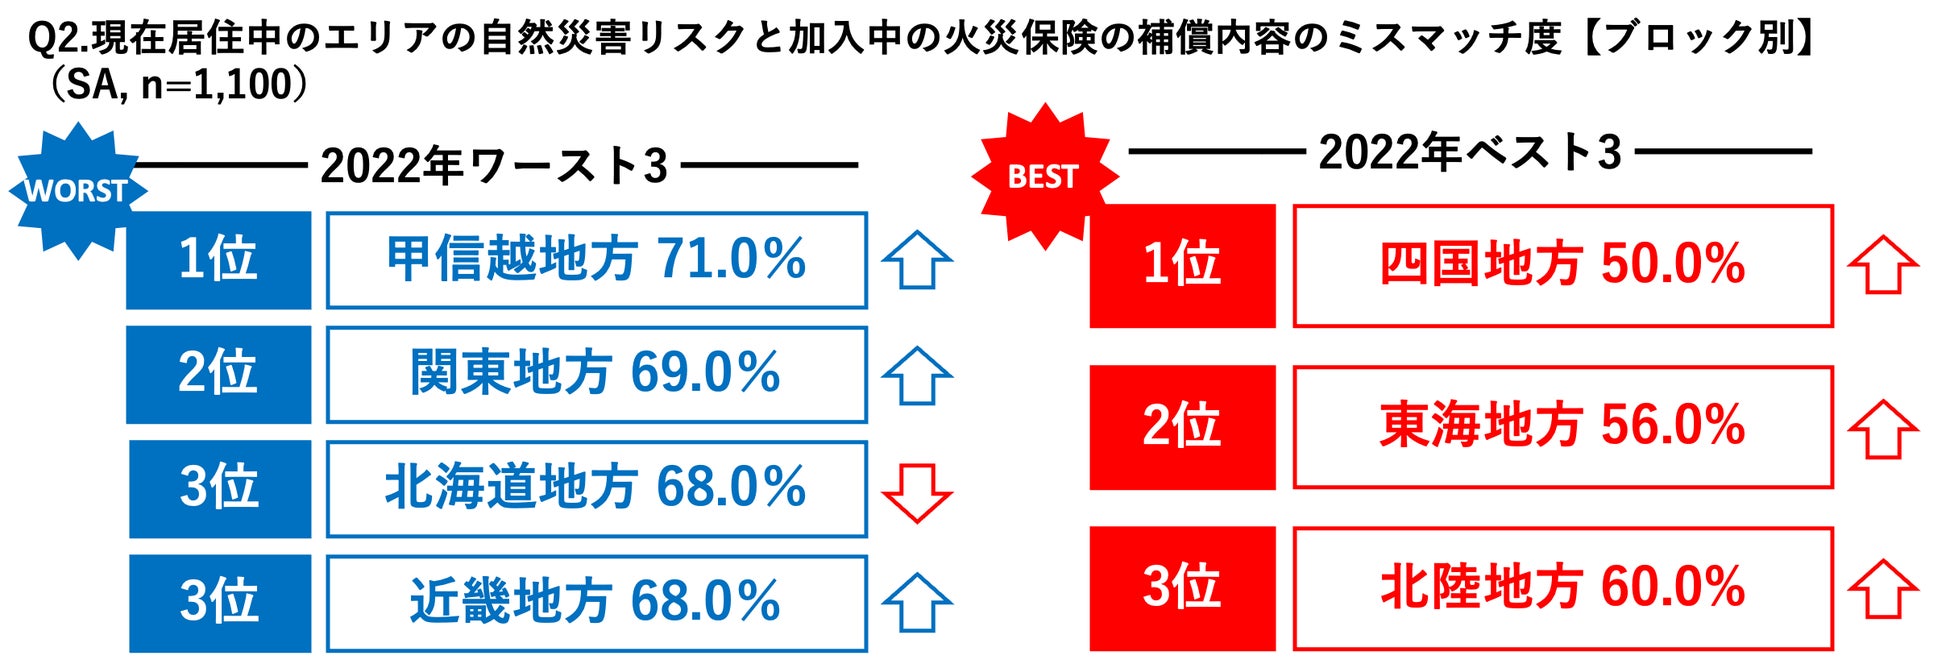 日本全国で6割を超える世帯において自然災害リスク×火災保険補償内容のミスマッチが発生 地域別防災意識ランキングでは東海地方が3年連続ベスト3にのサブ画像6